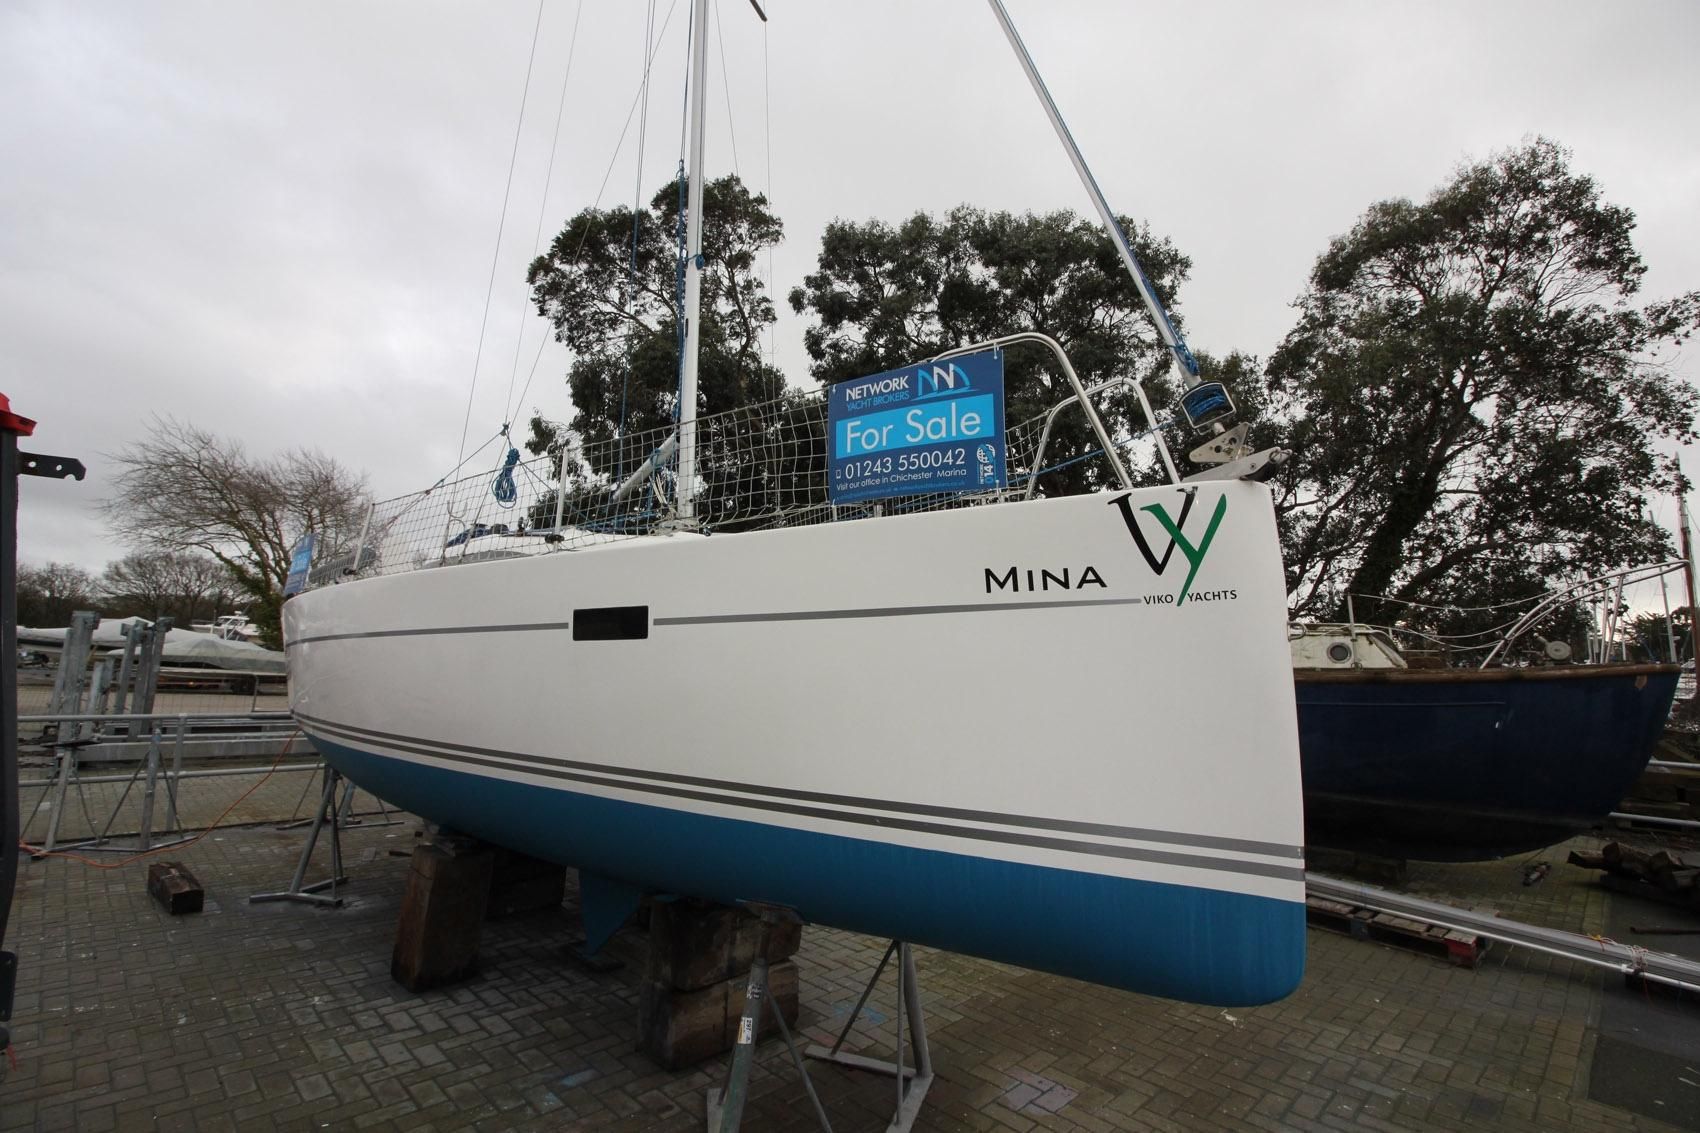 viko yachts for sale uk